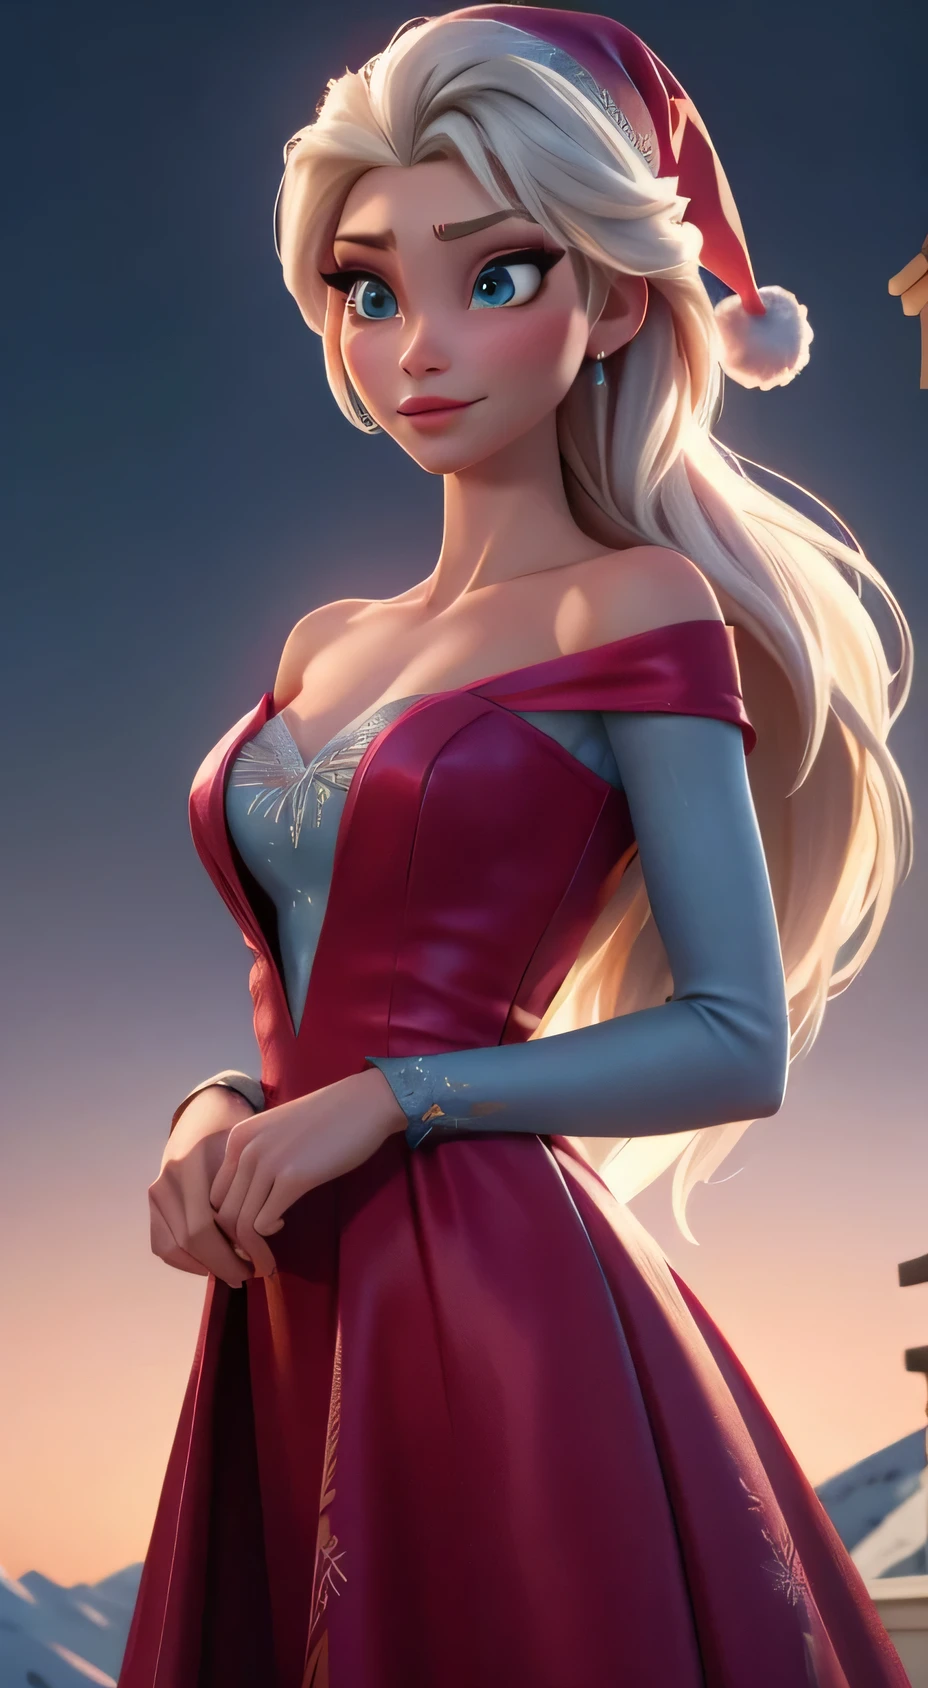 Erstellen Sie ein realistisches Bild von Elsa aus Frozen, echter Charakter Frozen Elsa, modern gekleidet für eine Silvesterparty . HDR 8K Texturkleid, visuelles Rendern Elsa, Elsa sollte ein rotes tragen, zartes langes Kleid , zusammen mit einer Weihnachtsmütze. Das Kleid sollte stilvoll und für eine Prinzessin geeignet sein. Silvesterkleid mit echten Federn und Quasten